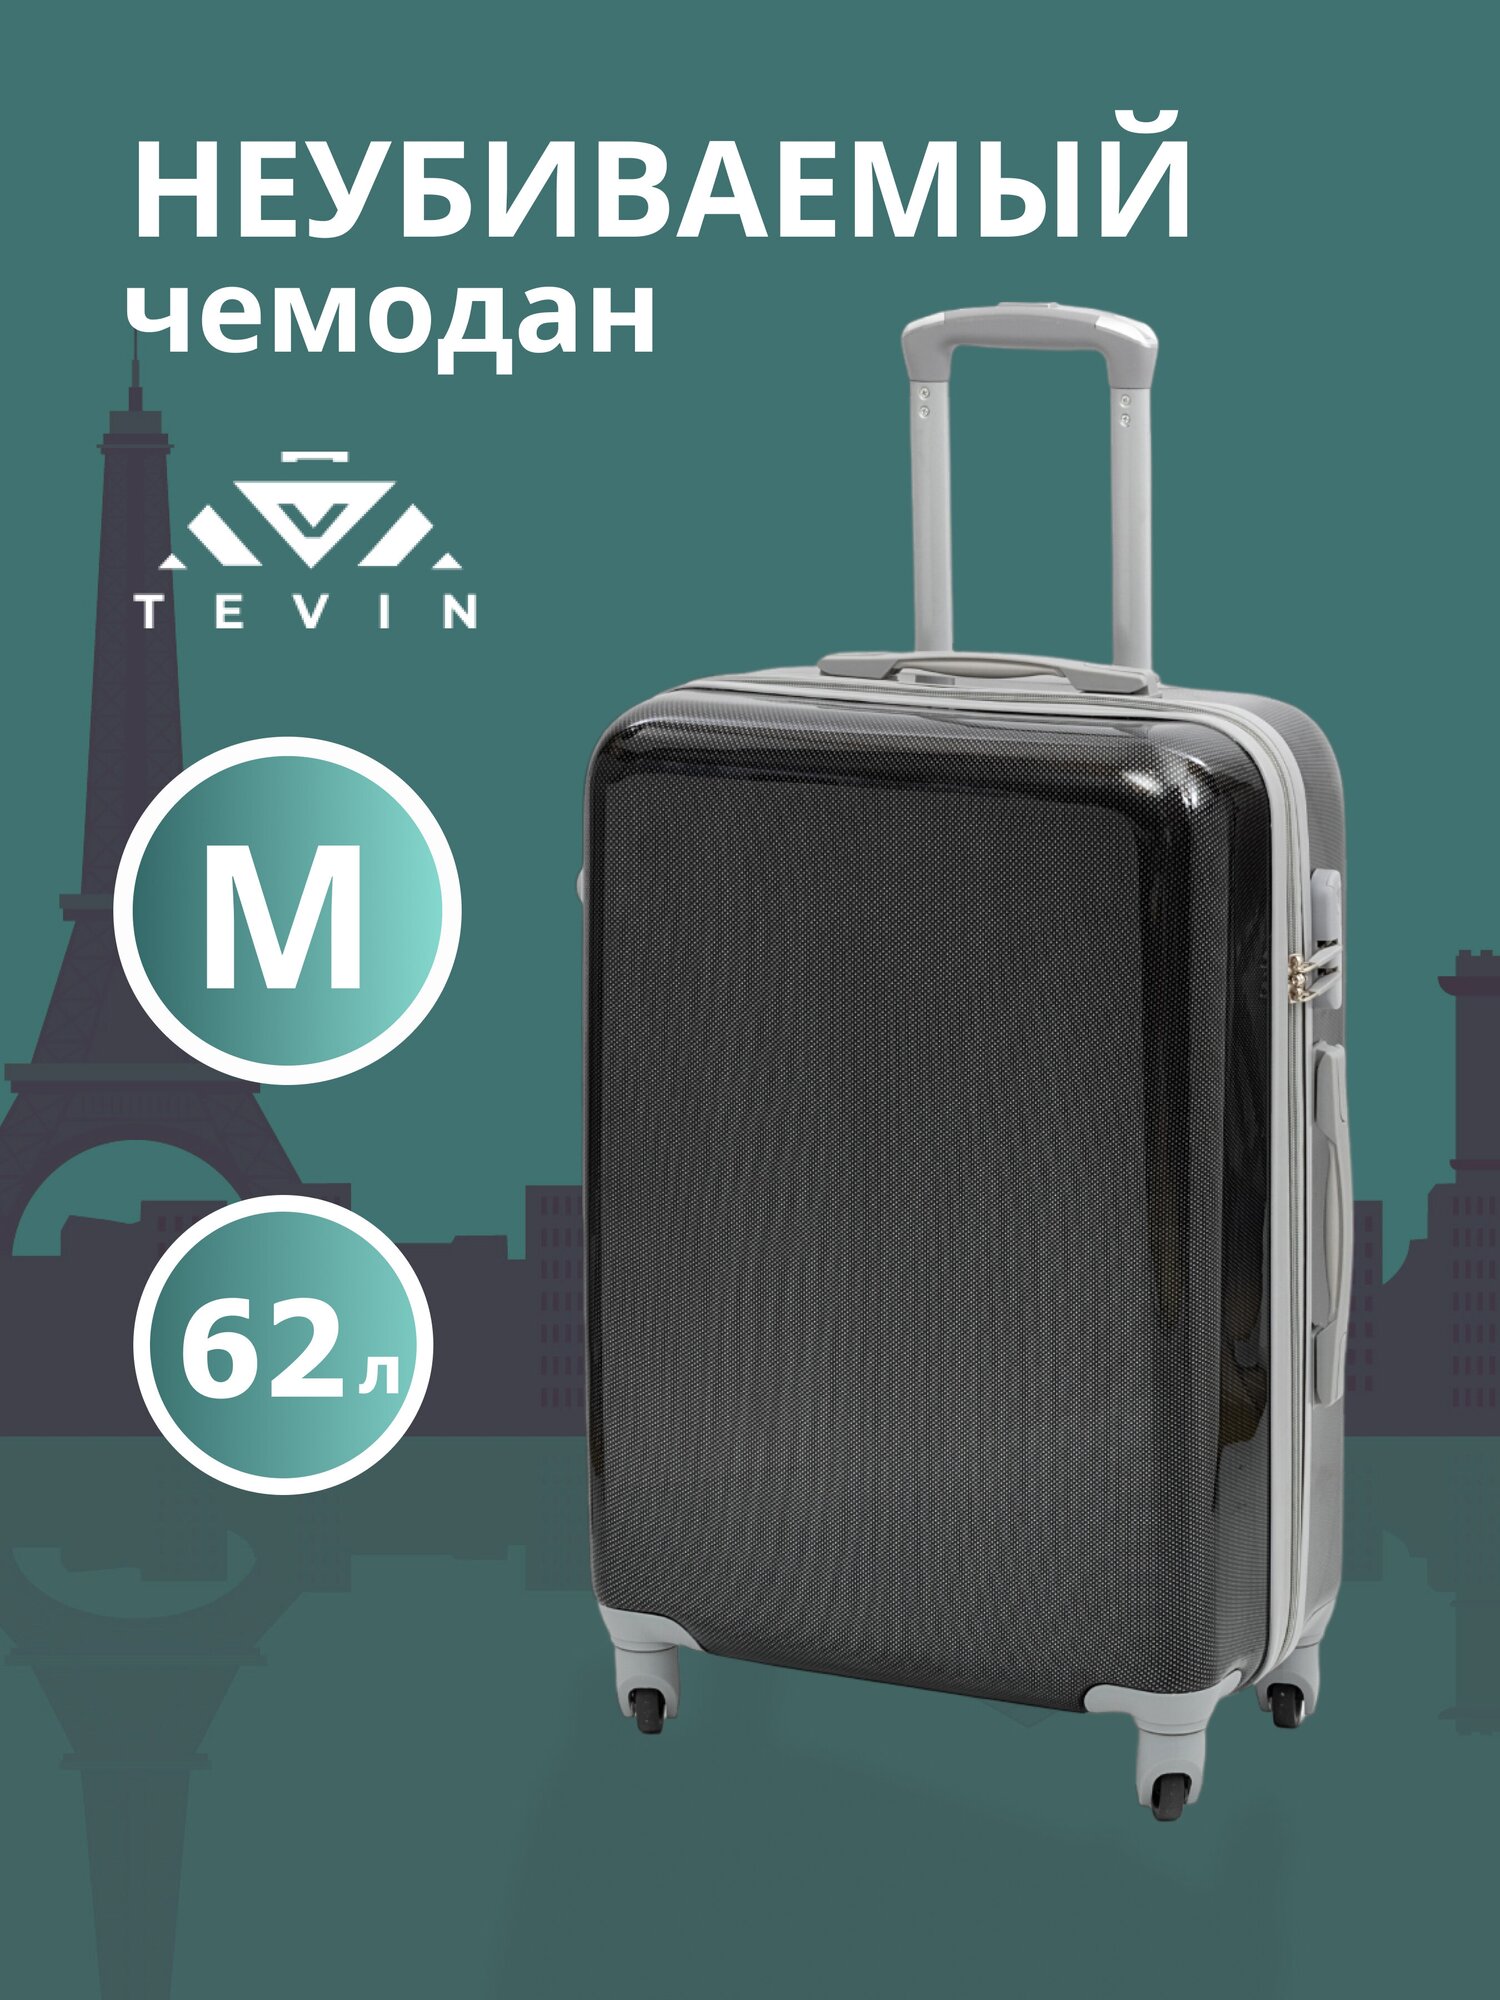 Чемодан на колесах дорожный средний багаж для путешествий мужской m TEVIN размер М 64 см 62 л легкий 3.2 кг прочный поликарбонат Коричневый